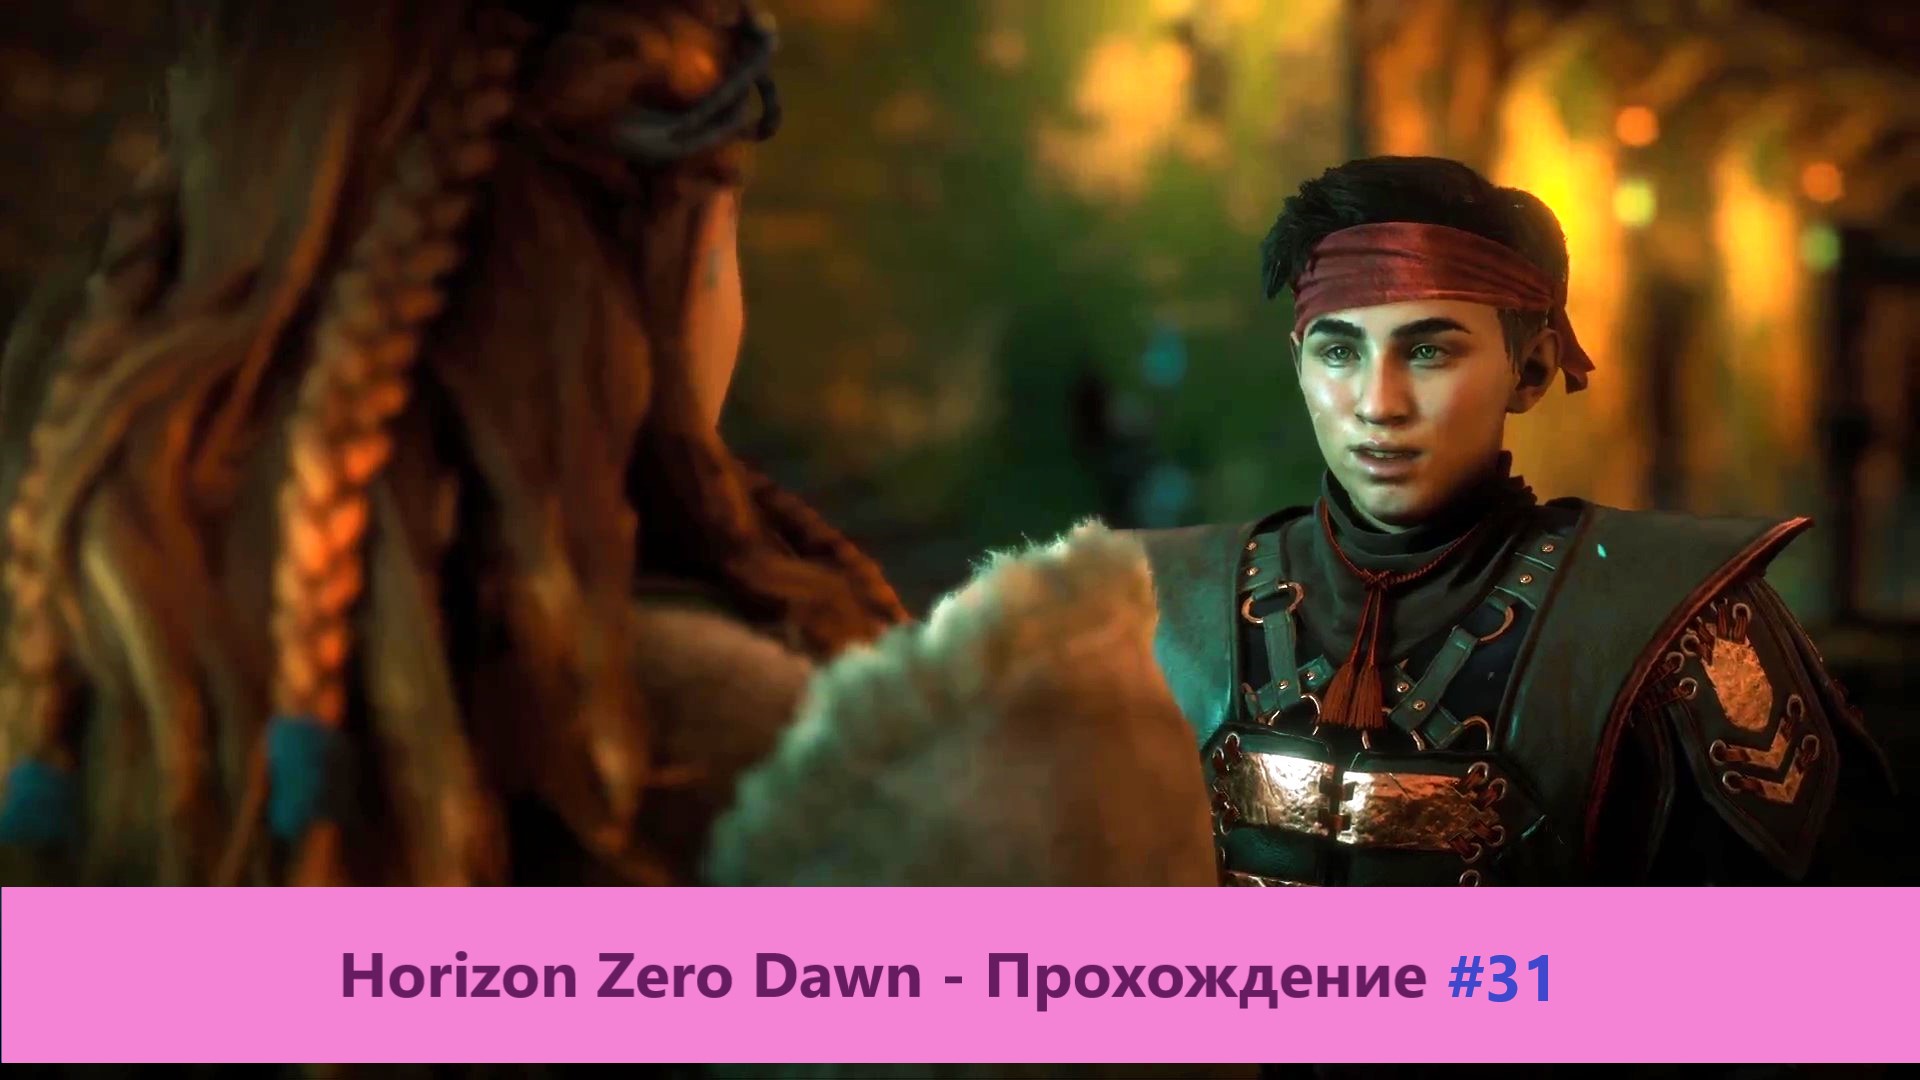 Horizon Zero Dawn - Прохождение #31